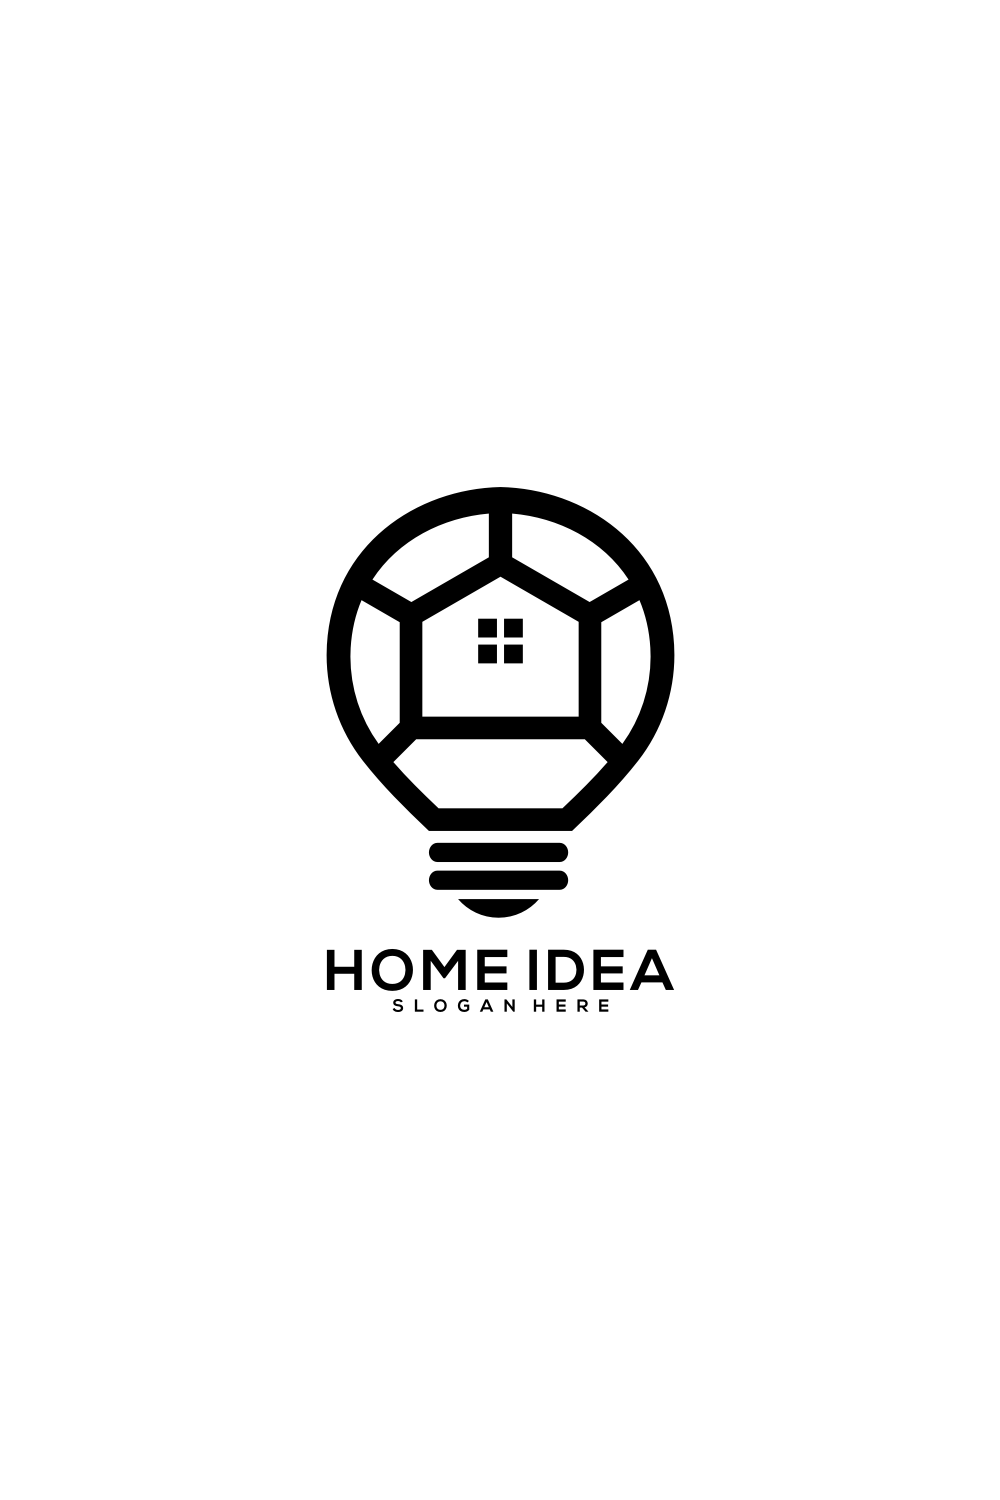 Home Idea Logo Vector Design Pinterest preview.